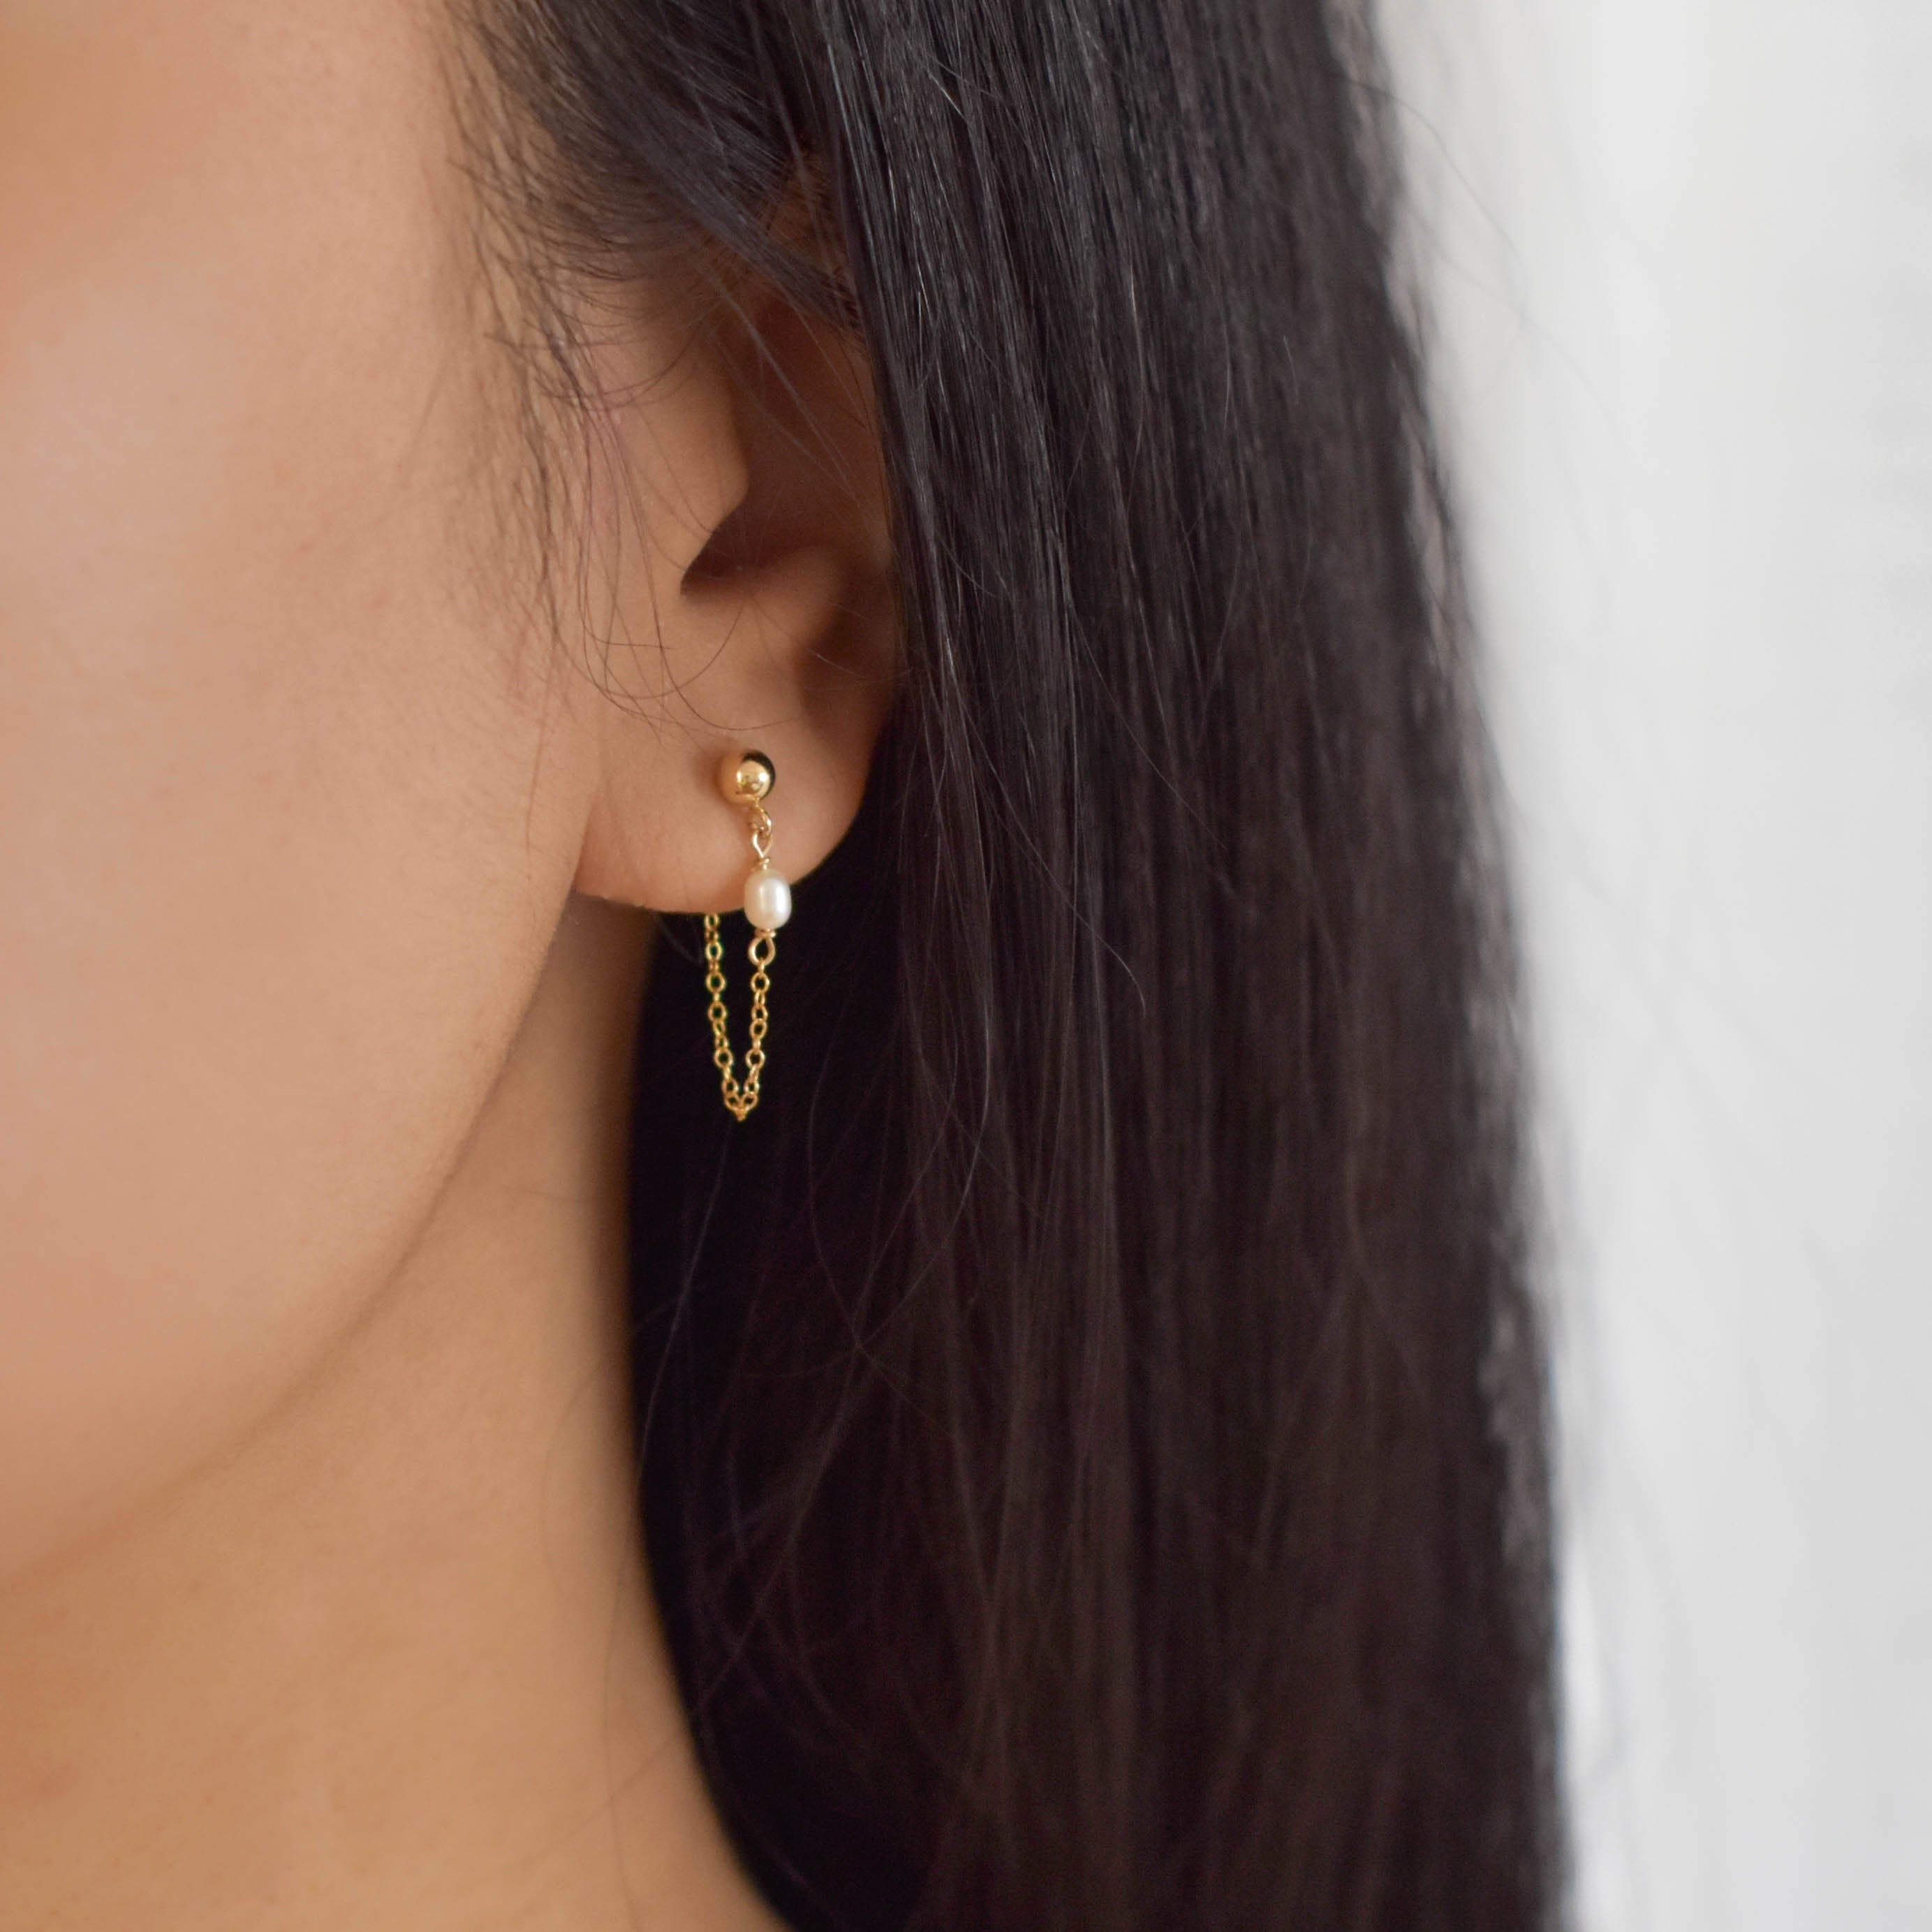 Pearl Chain Ear Jackets - Chain Earrings, Front Back Earrings, gold filled earrings, gold filled chain earrings, dainty earrings |GFE00037